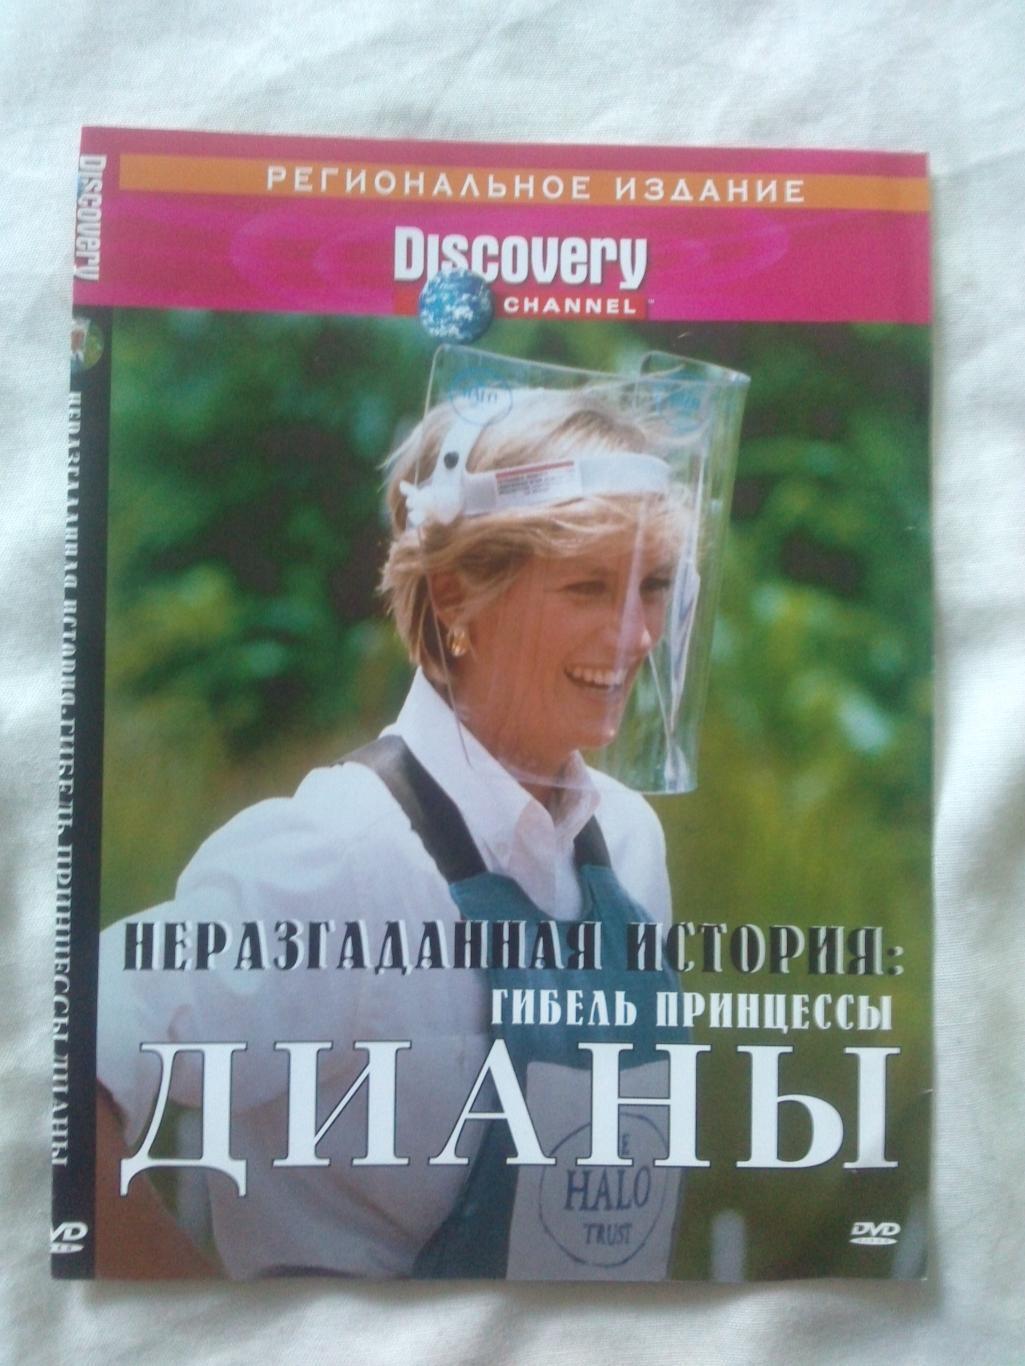 DVD Discovery : Гибель принцессы Дианы ( лицензия ) Королевская семья (новый)